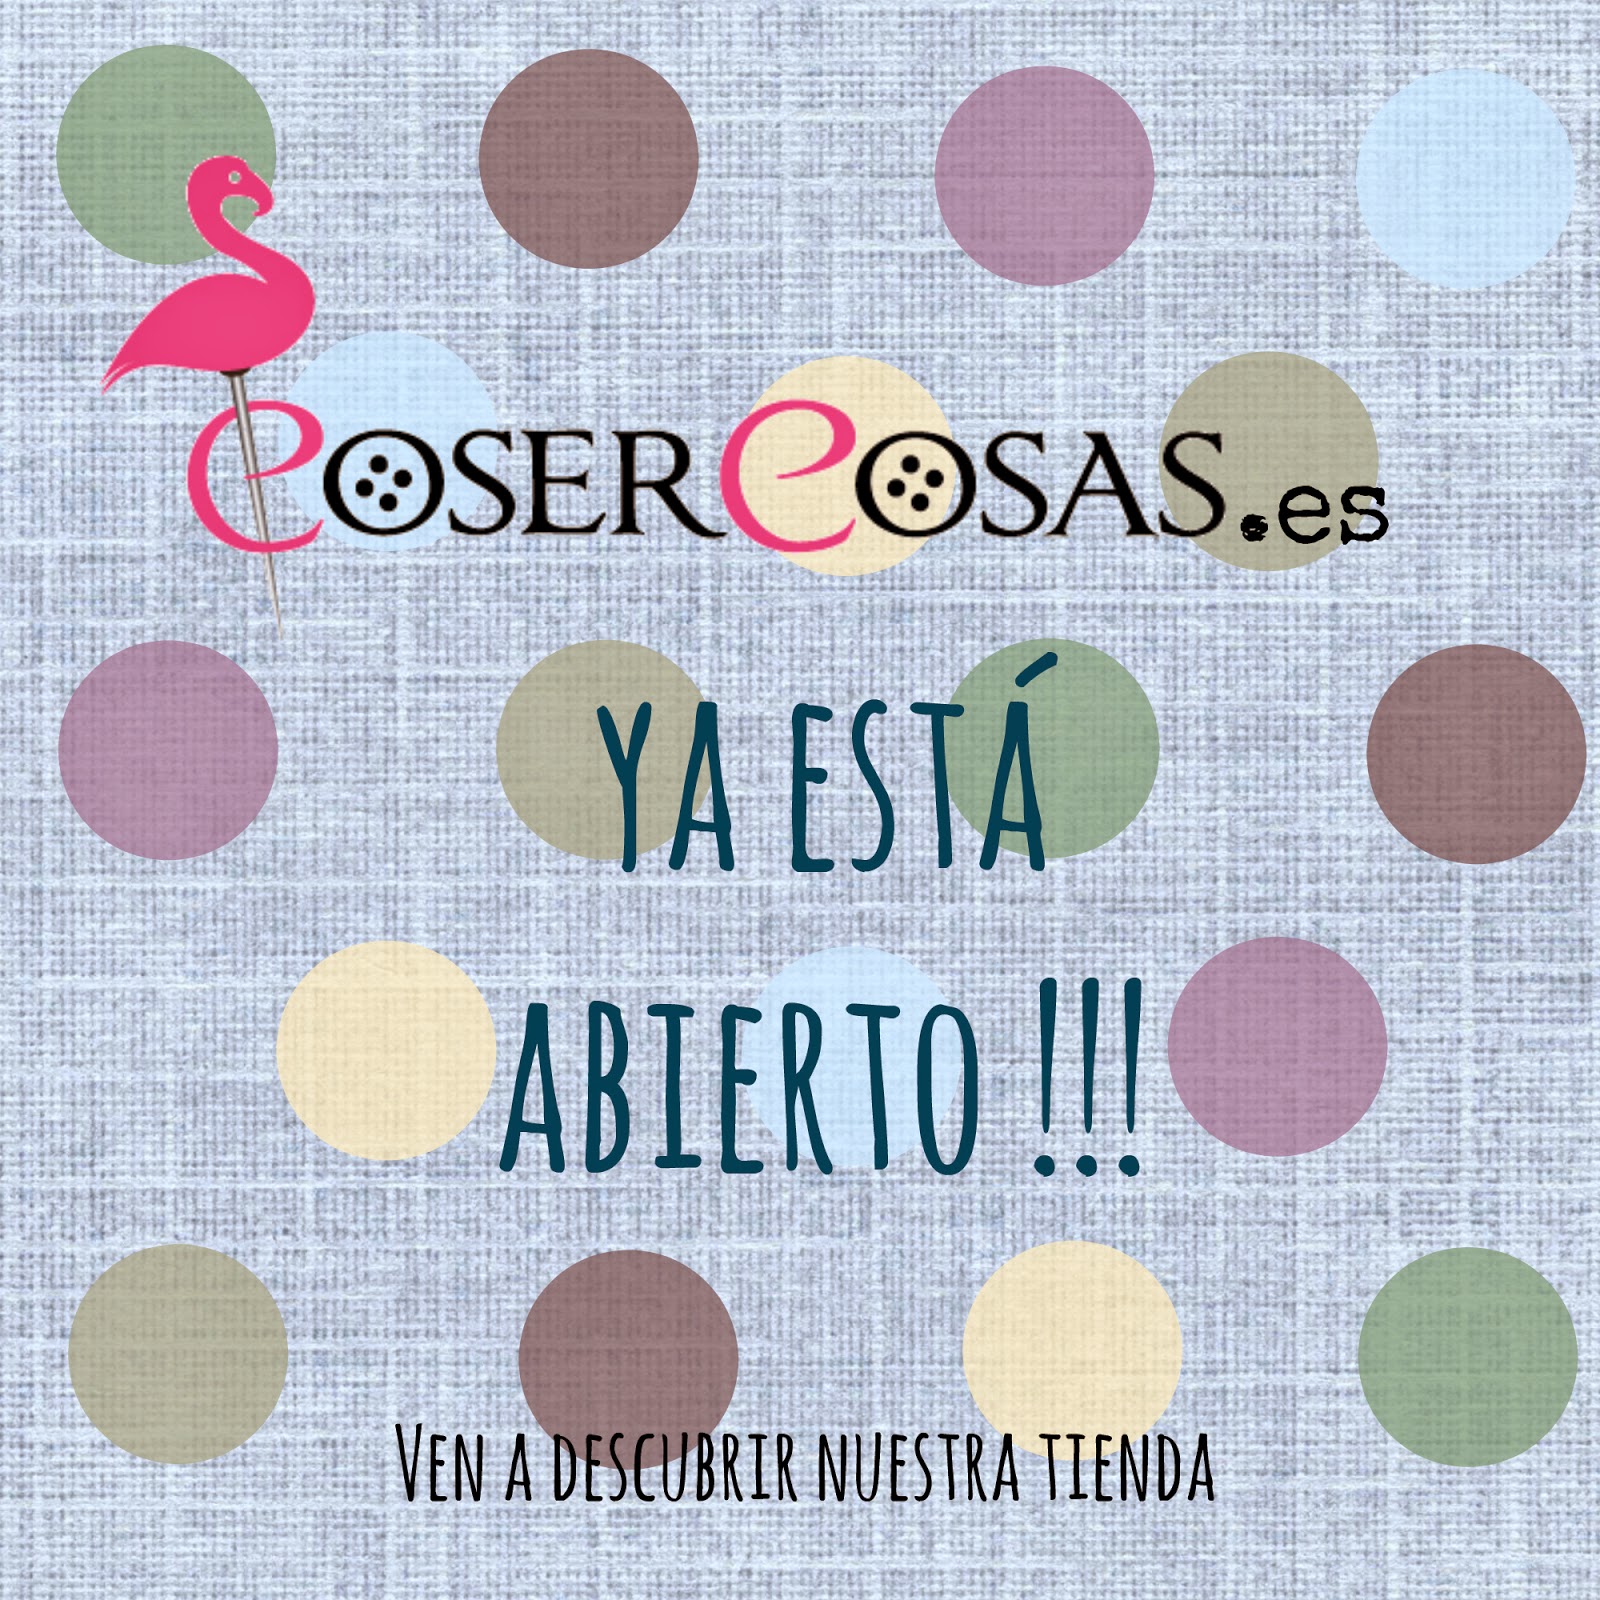 www.cosercosas.es